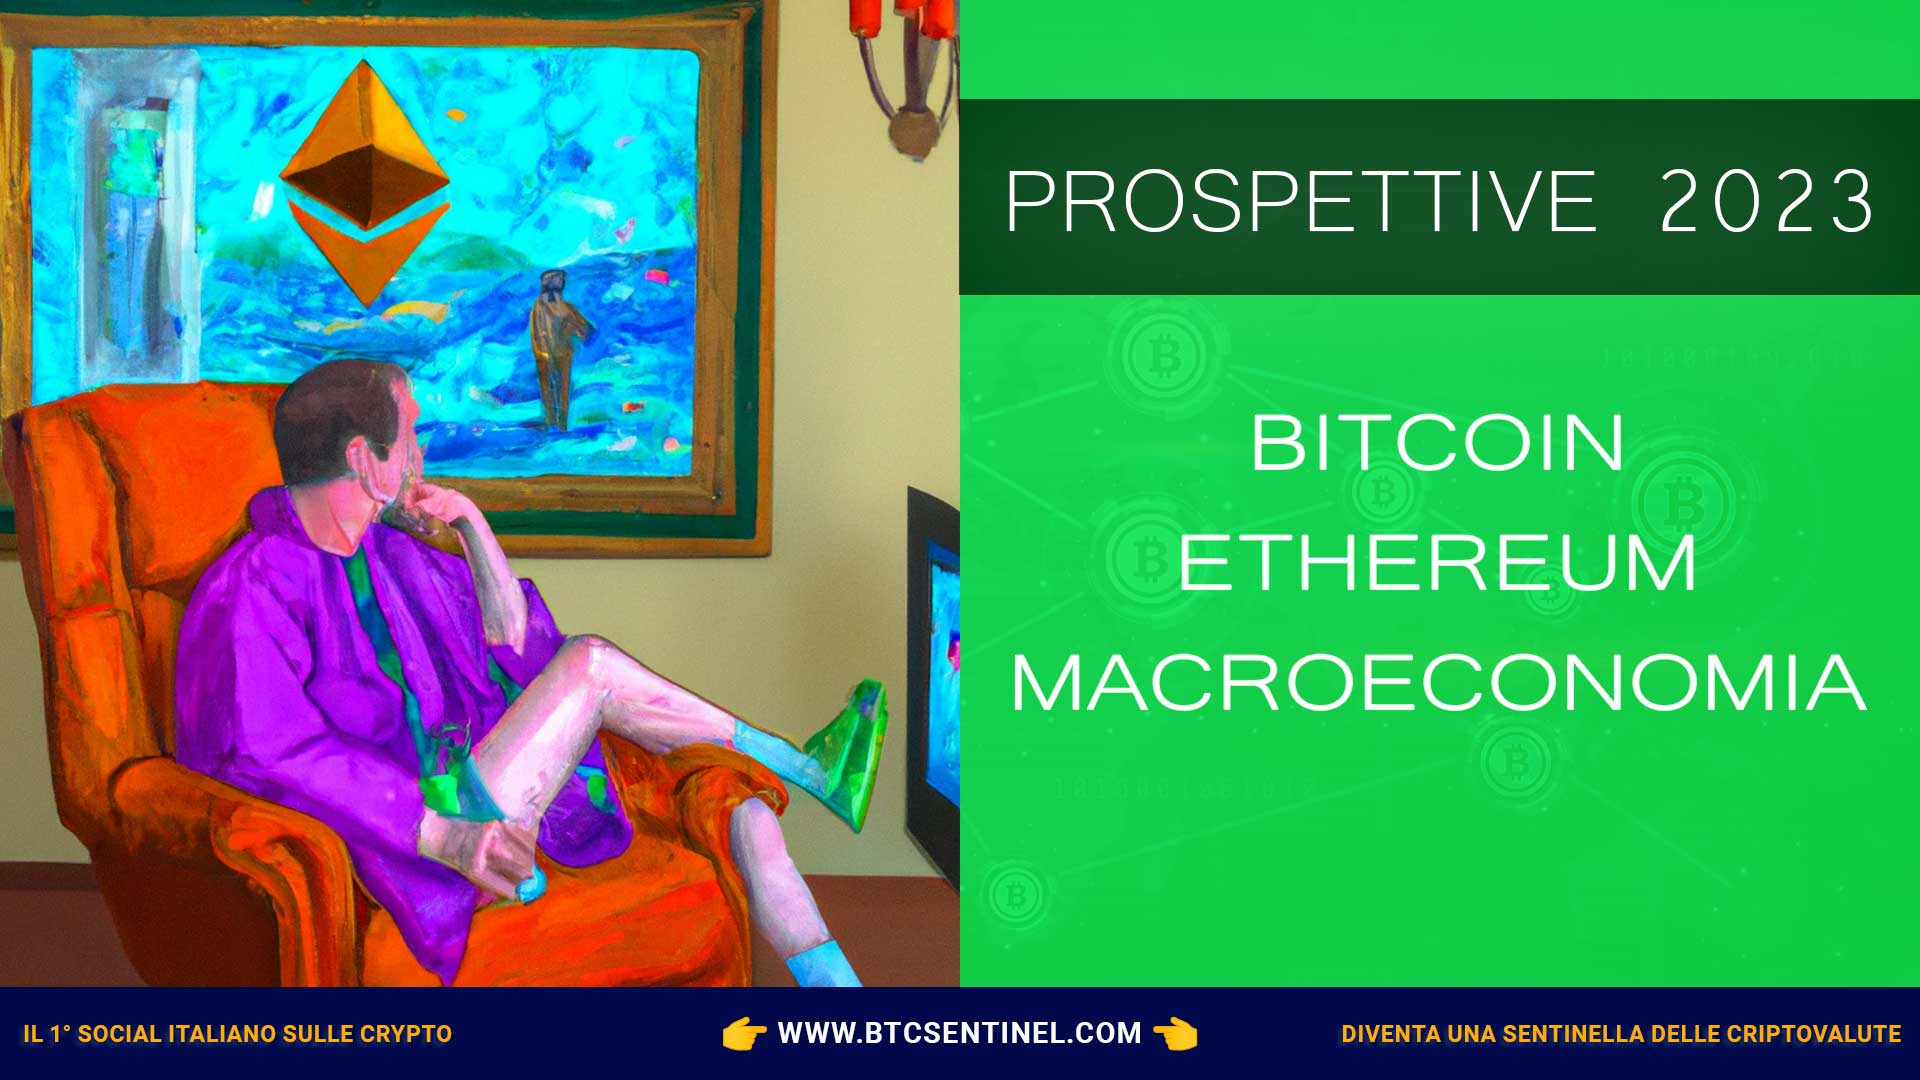 Prospettive per il 2023: Bitcoin, Ethereum, macroeconomia